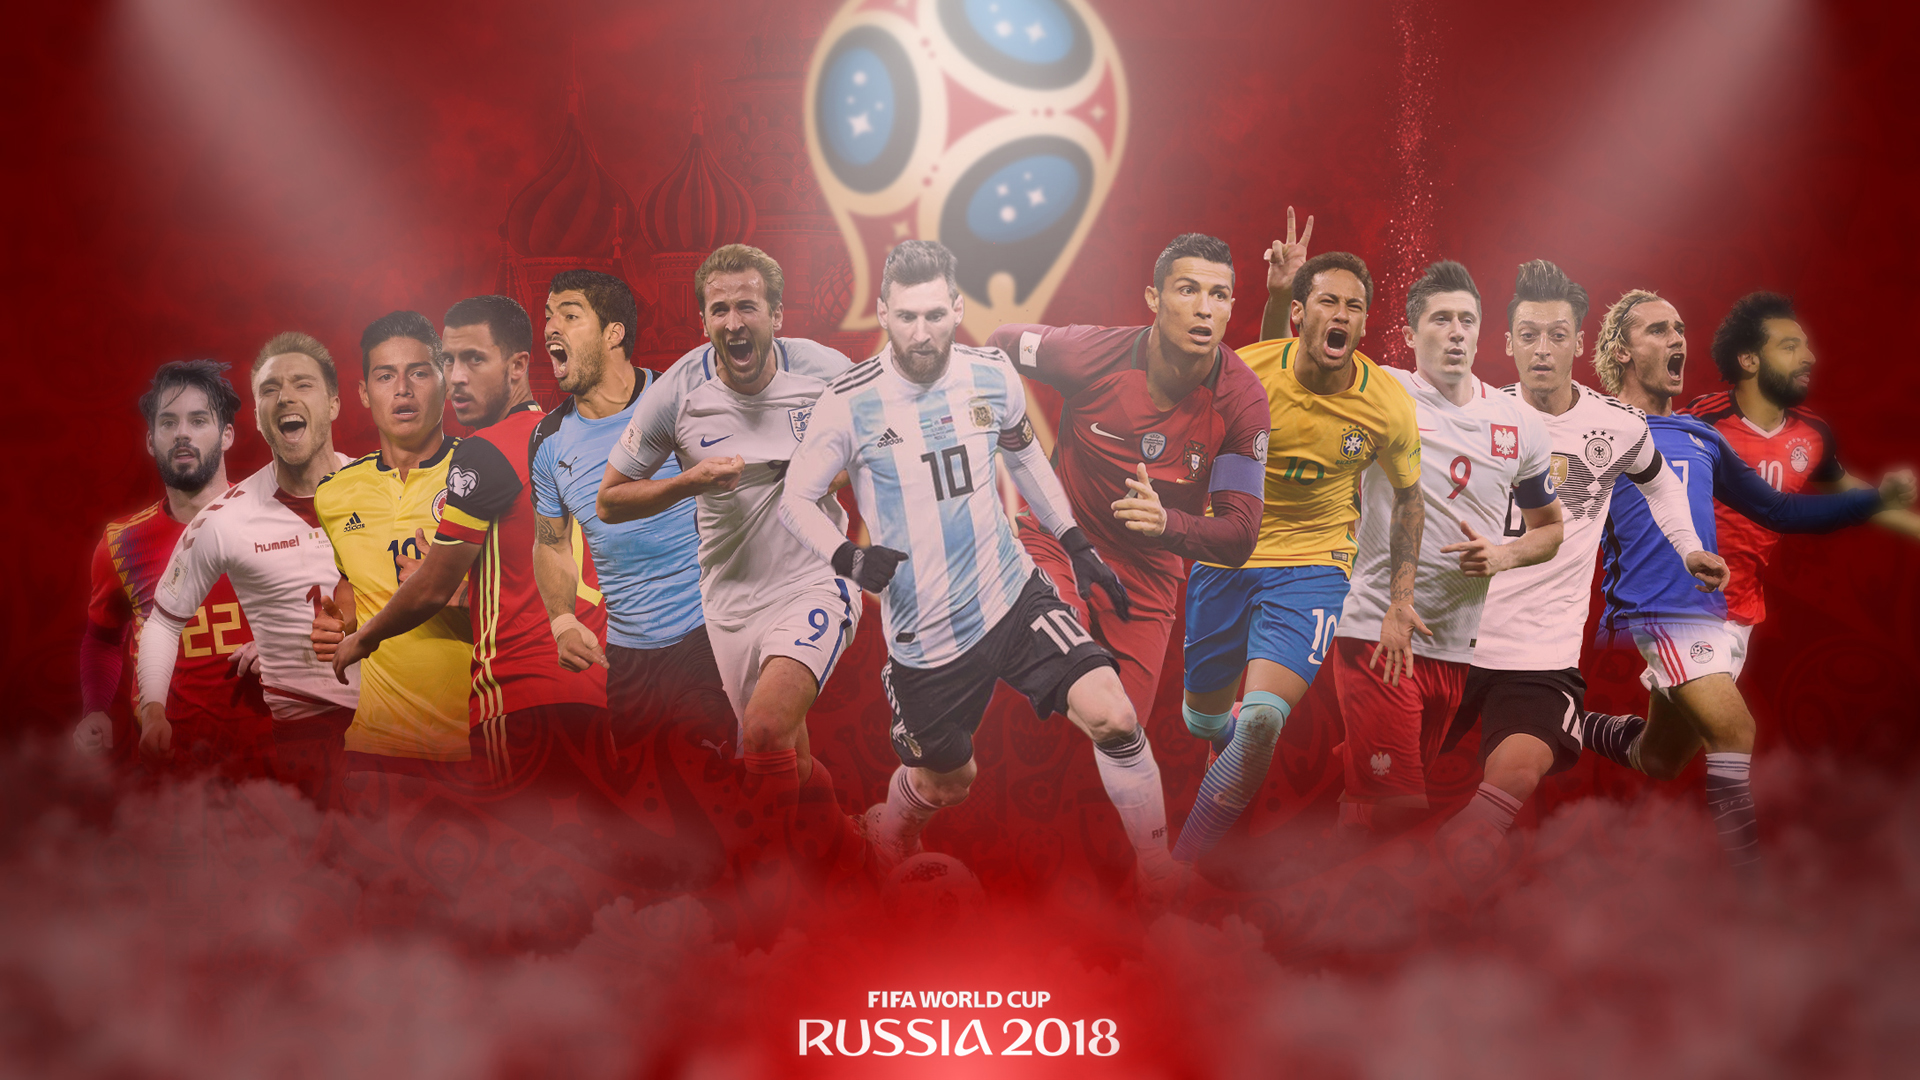 2018世界杯壁纸下载 2018世界杯壁纸高清图片大全